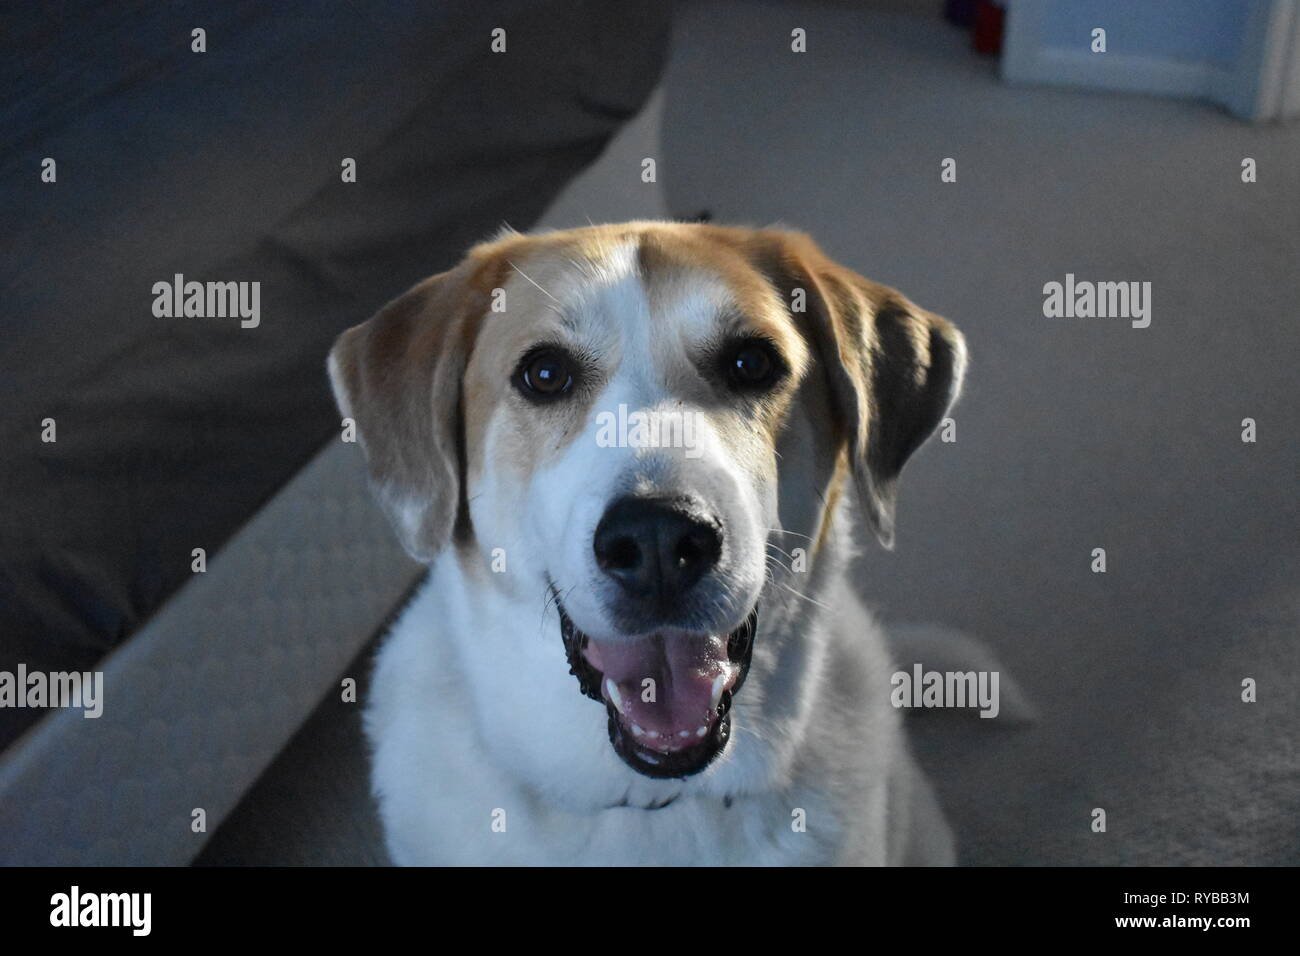 Dog photo Stock Photo